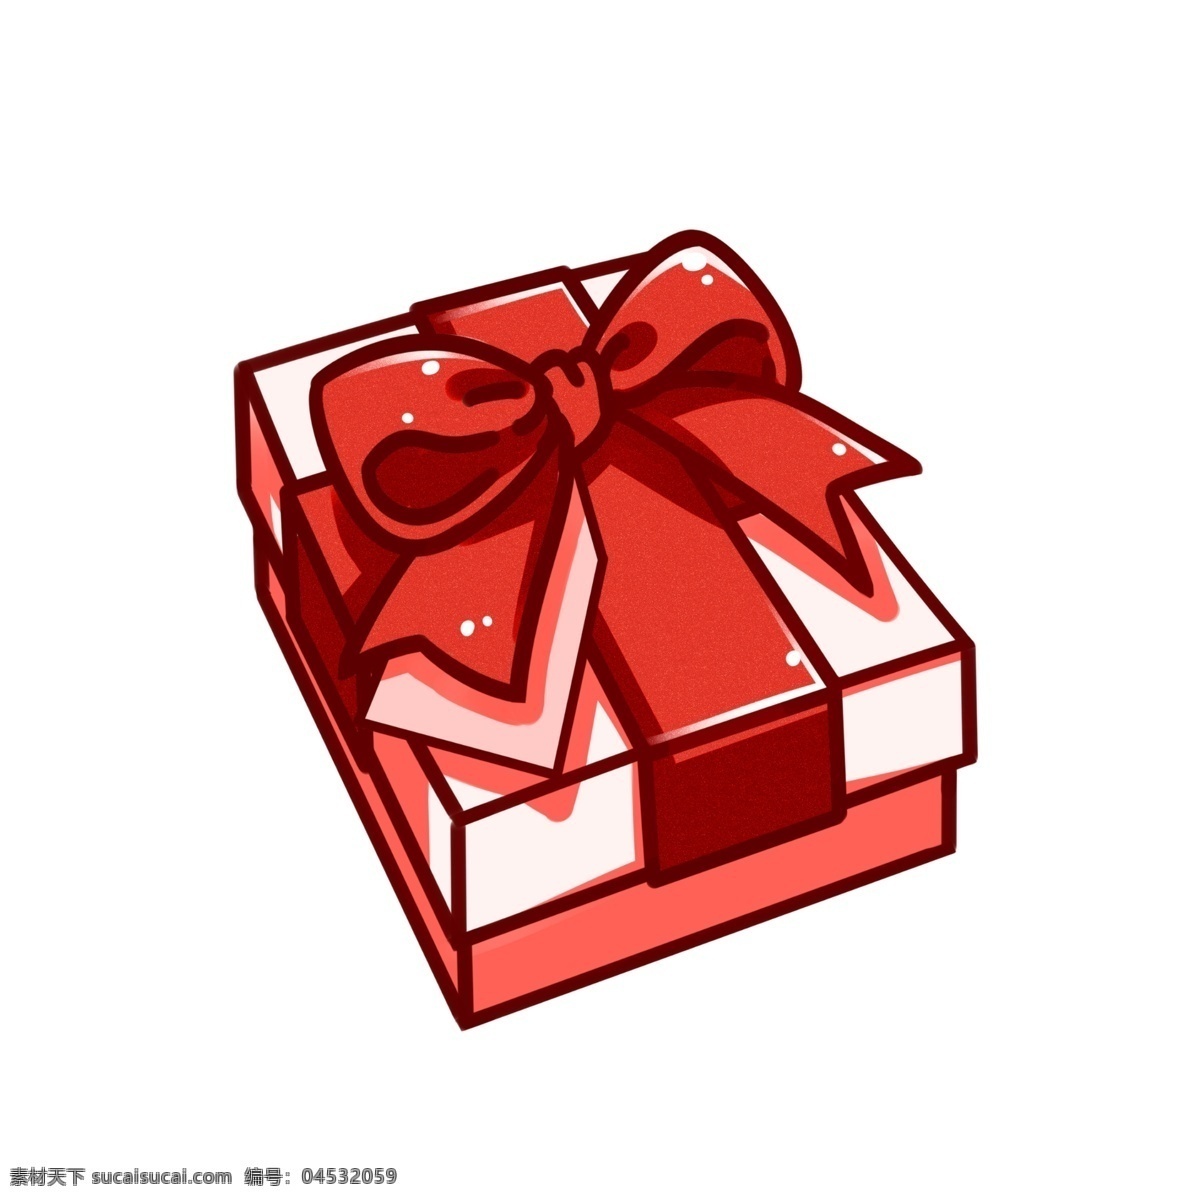 手绘 情人节 礼盒 插画 红色的蝴蝶结 红色的丝带 卡通插画 情人节礼品 红色的礼盒